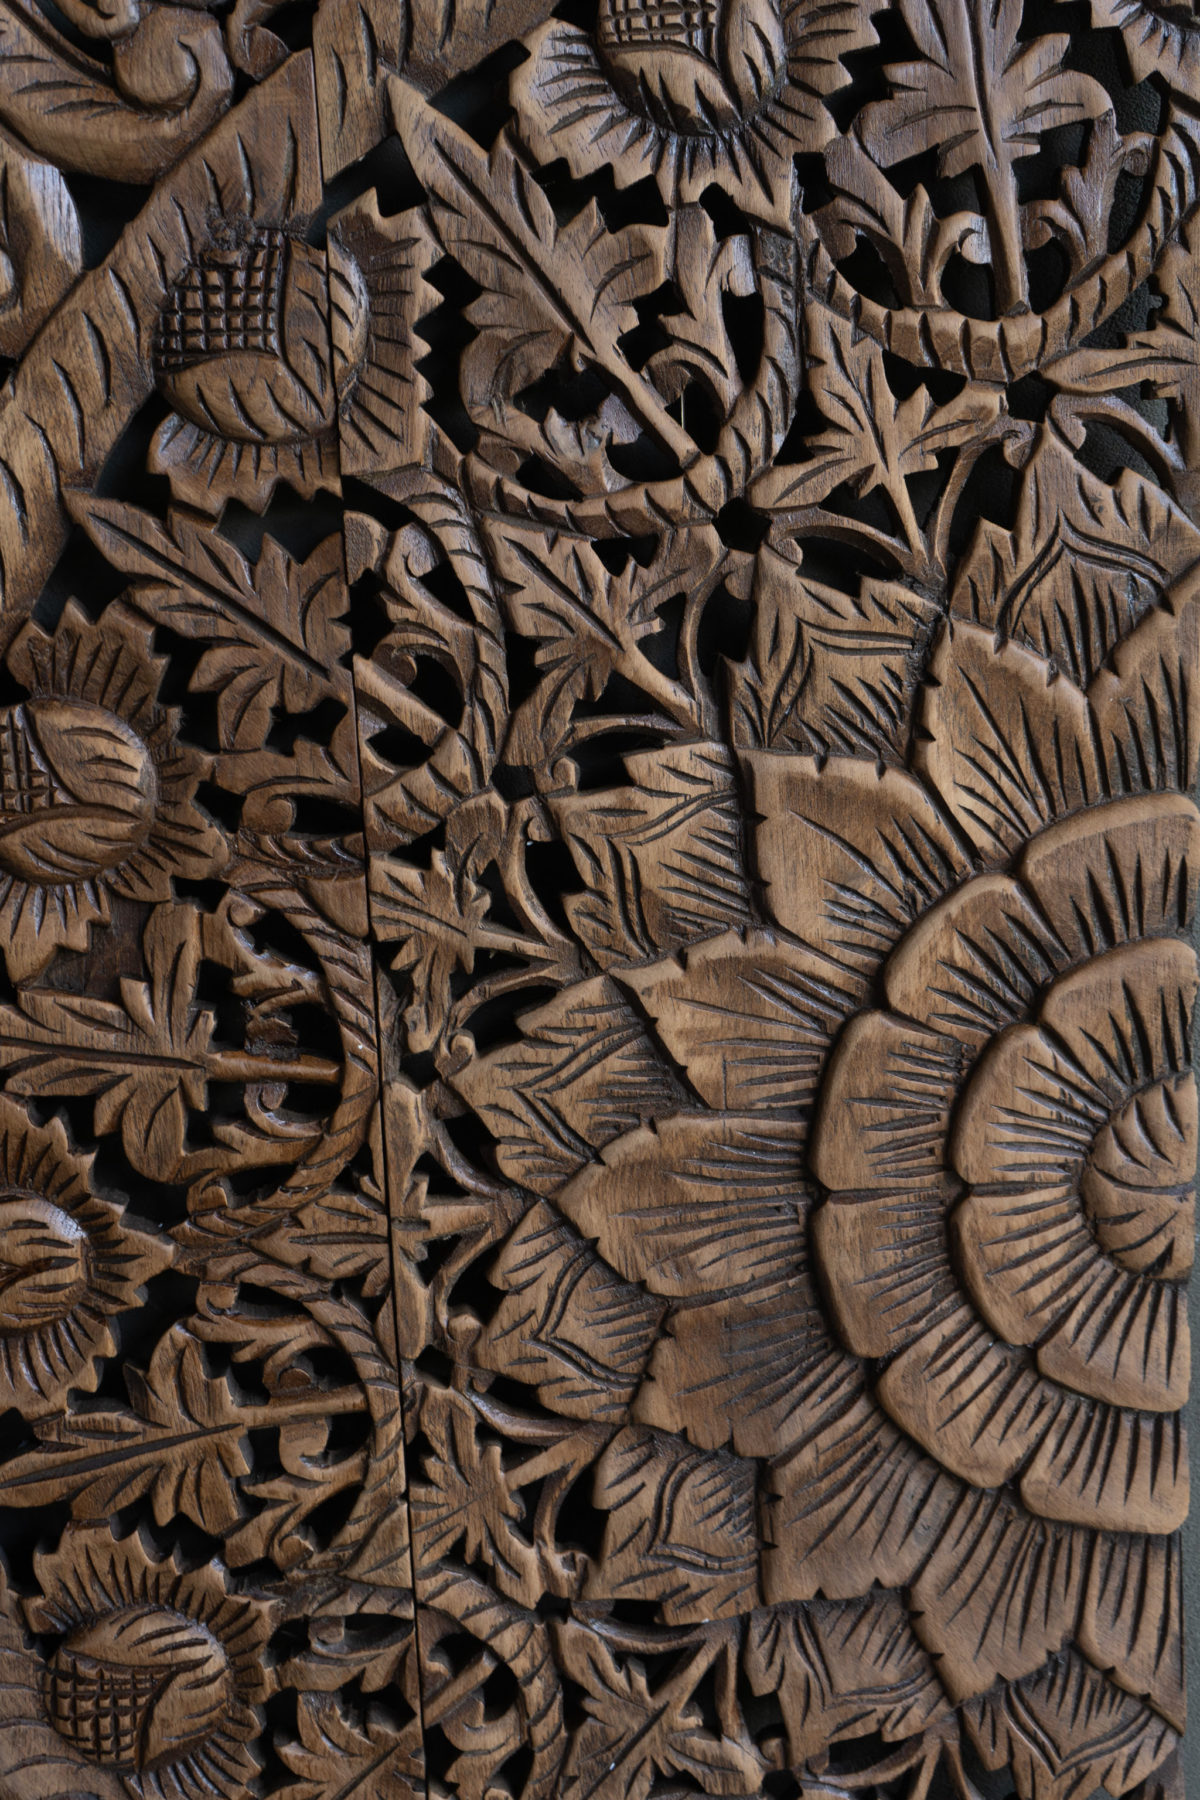 Mandala wood carving